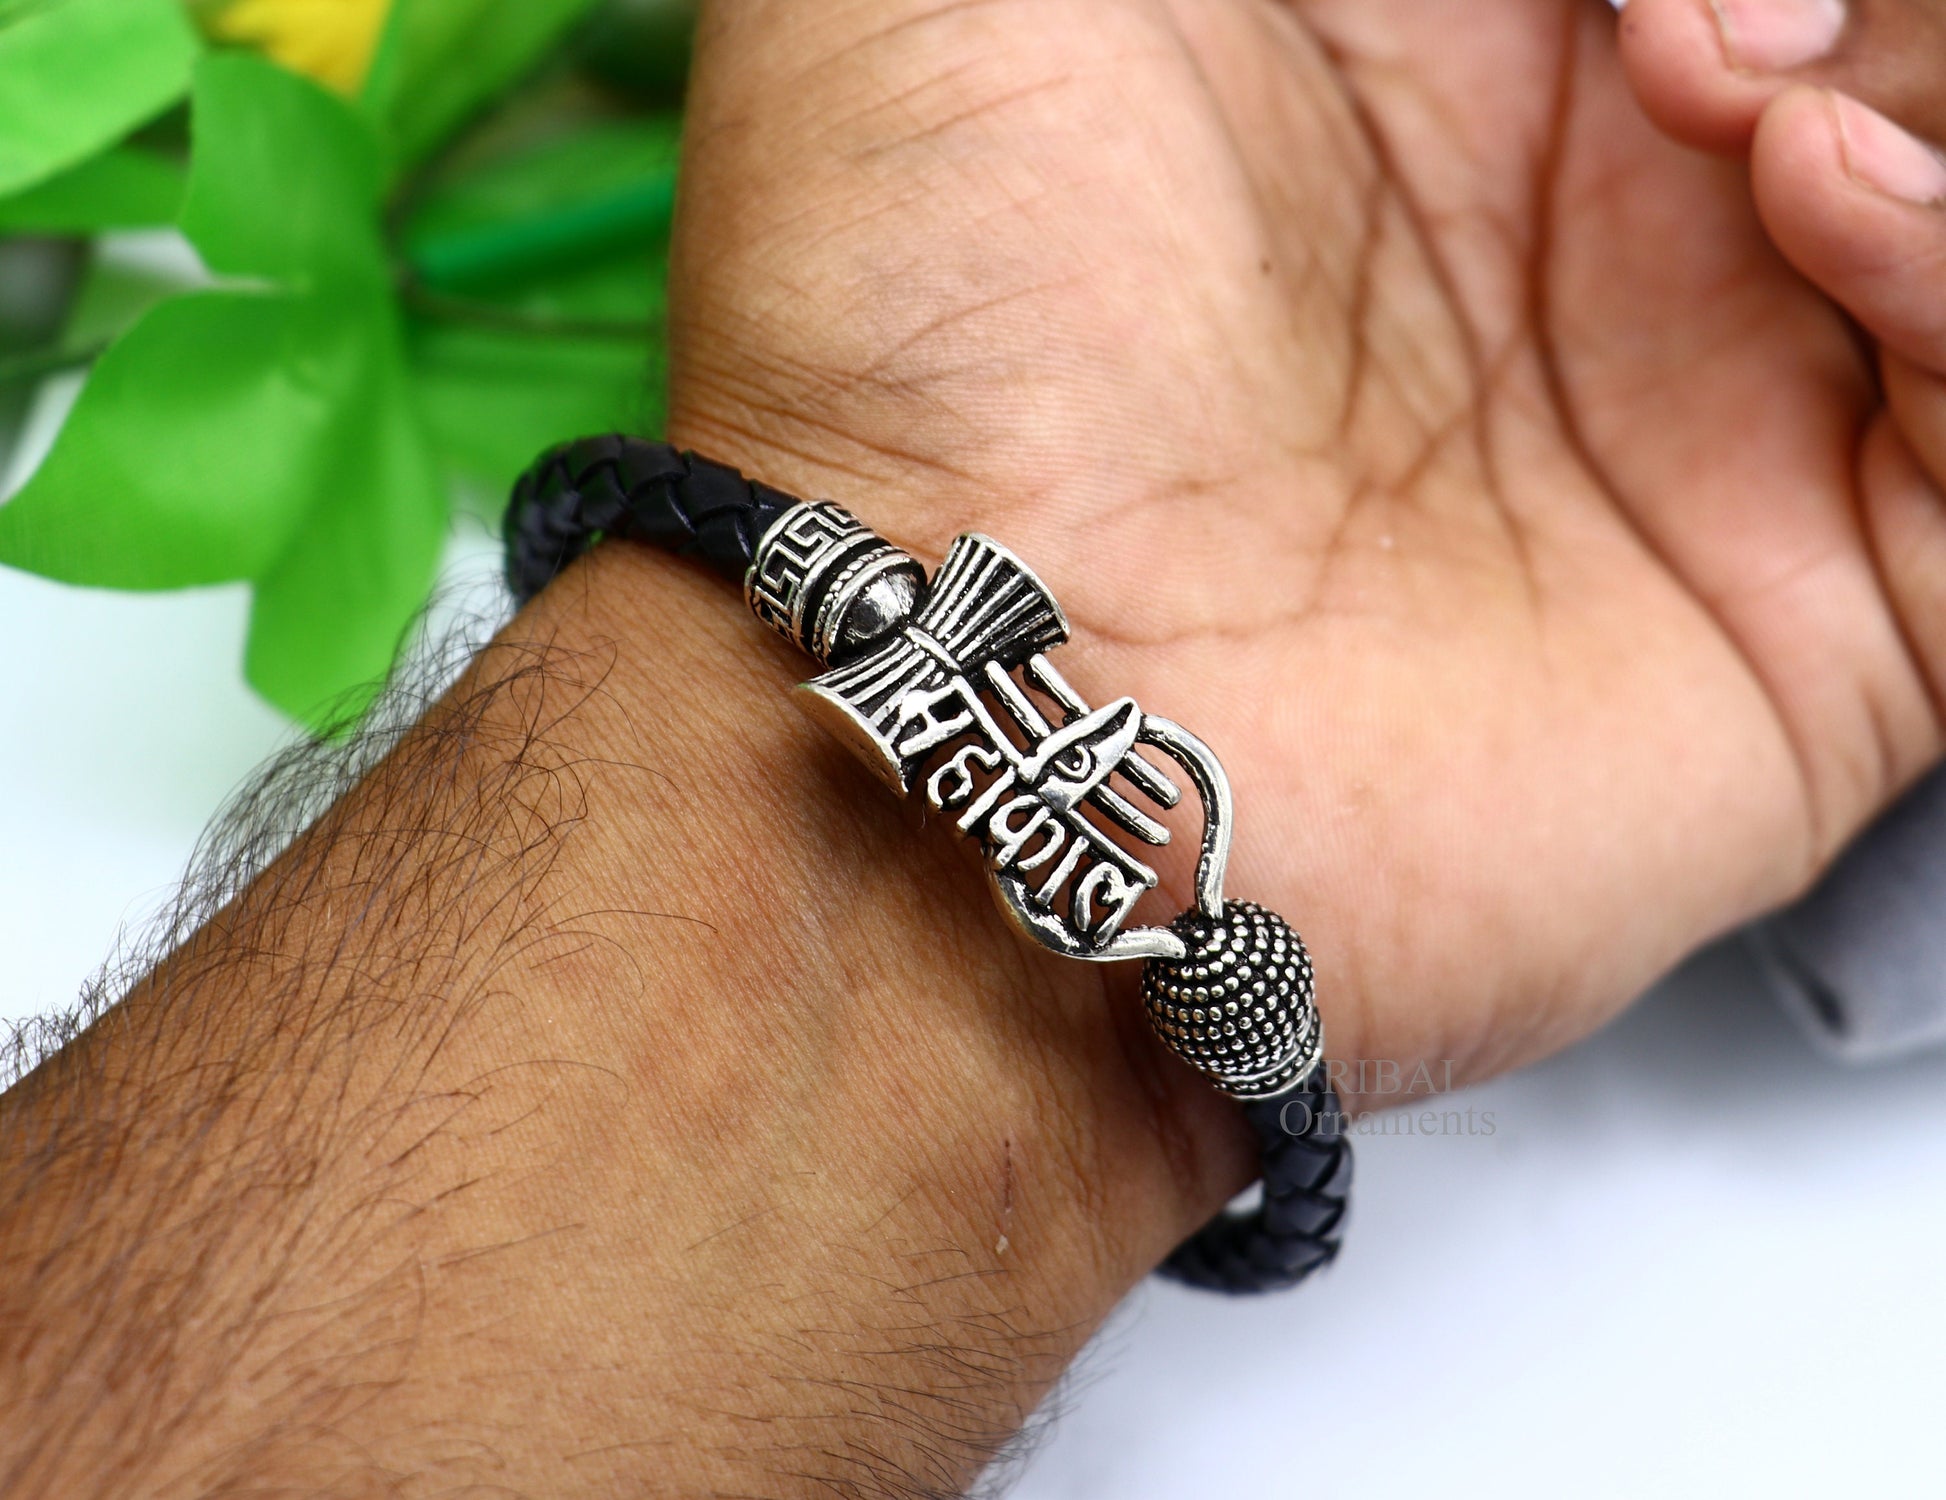 9" long 925 sterling silver customized design lord Shiva Mahakal bracelet, leather belt trident shiva bracelet best gift for him Rnsbr584 - TRIBAL ORNAMENTS